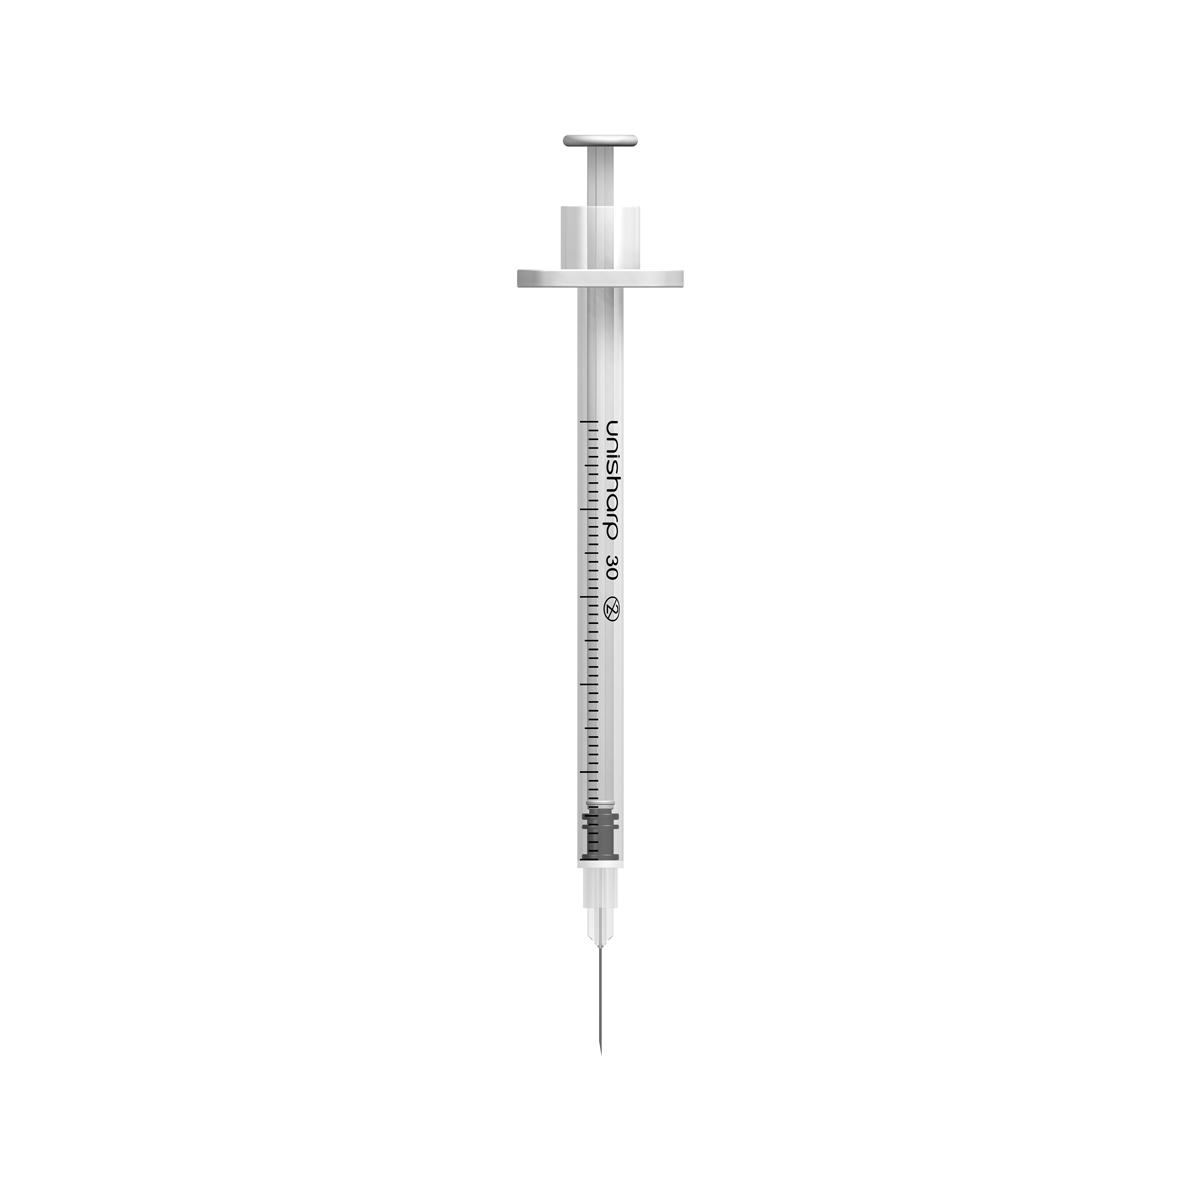 Unisharp 0.5ml 30G fixed needle syringe: white